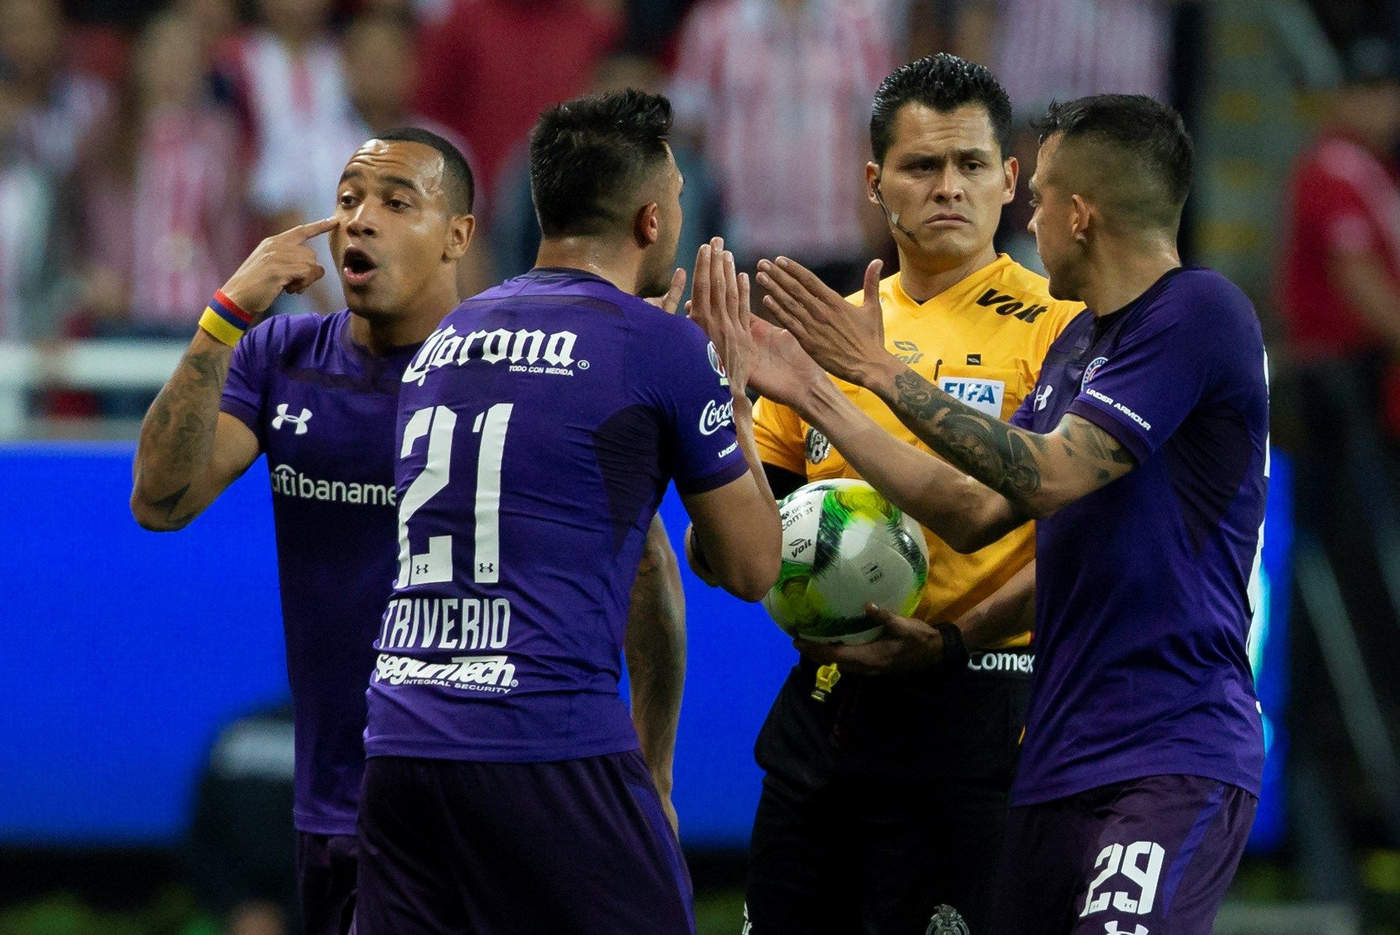 Los jugadores del Toluca discuten con el árbitro Jorge Pérez luego de la invalidación del gol de Enrique Triverio (21).